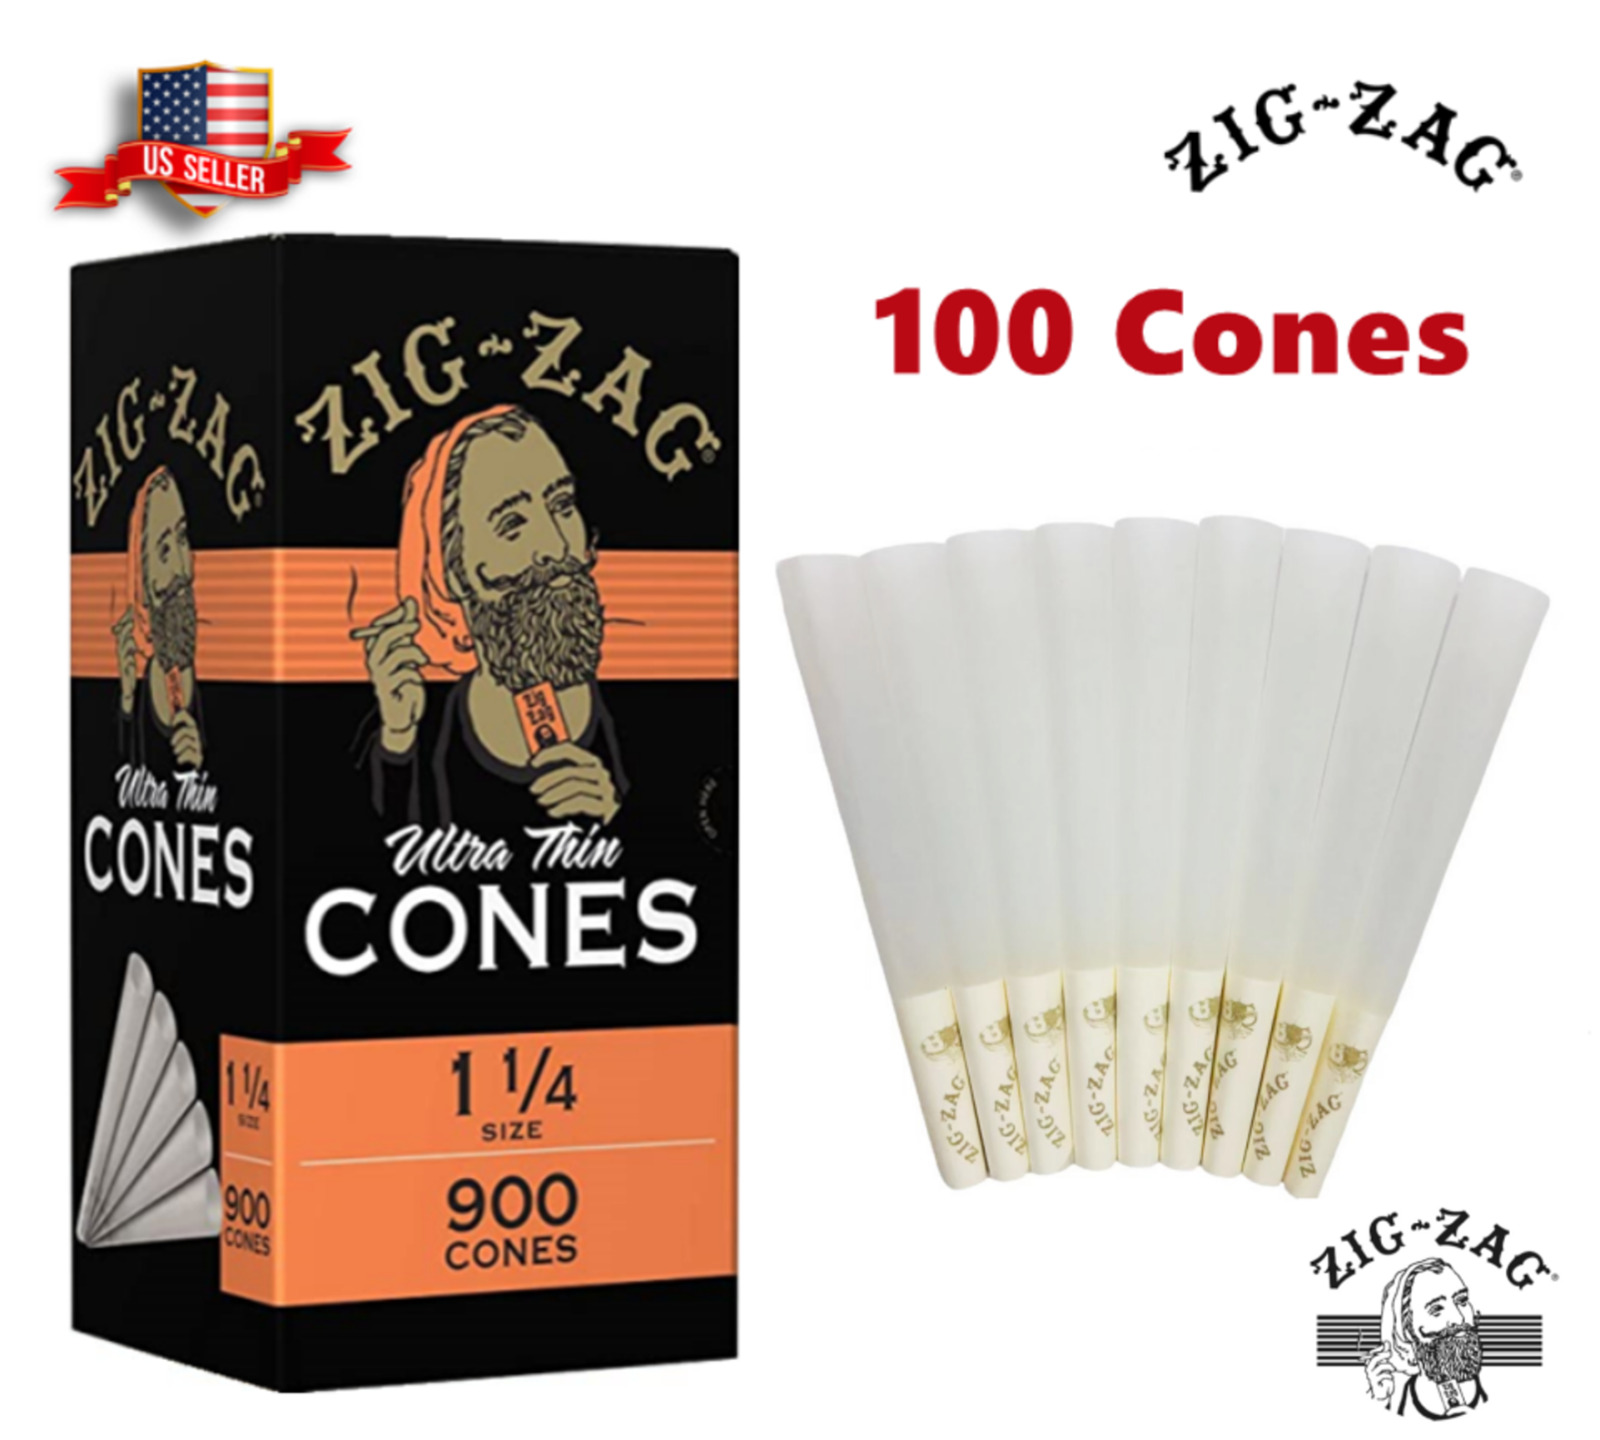 Zig-Zag 1 1/4 Size Ultra thin Pre rolled Cone 100 Cones 